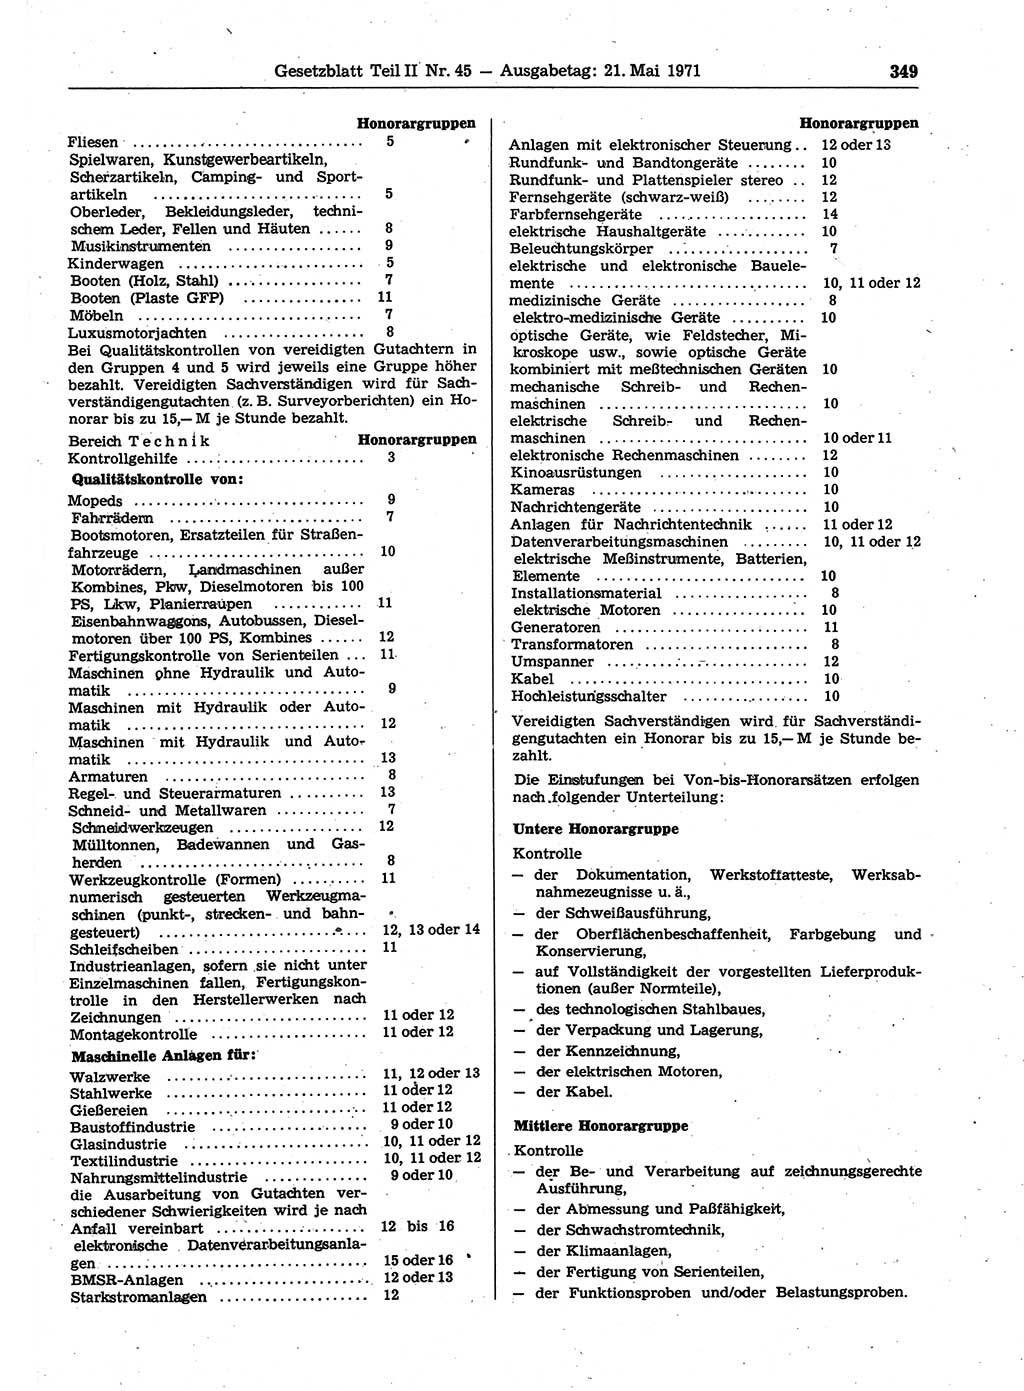 Gesetzblatt (GBl.) der Deutschen Demokratischen Republik (DDR) Teil ⅠⅠ 1971, Seite 349 (GBl. DDR ⅠⅠ 1971, S. 349)